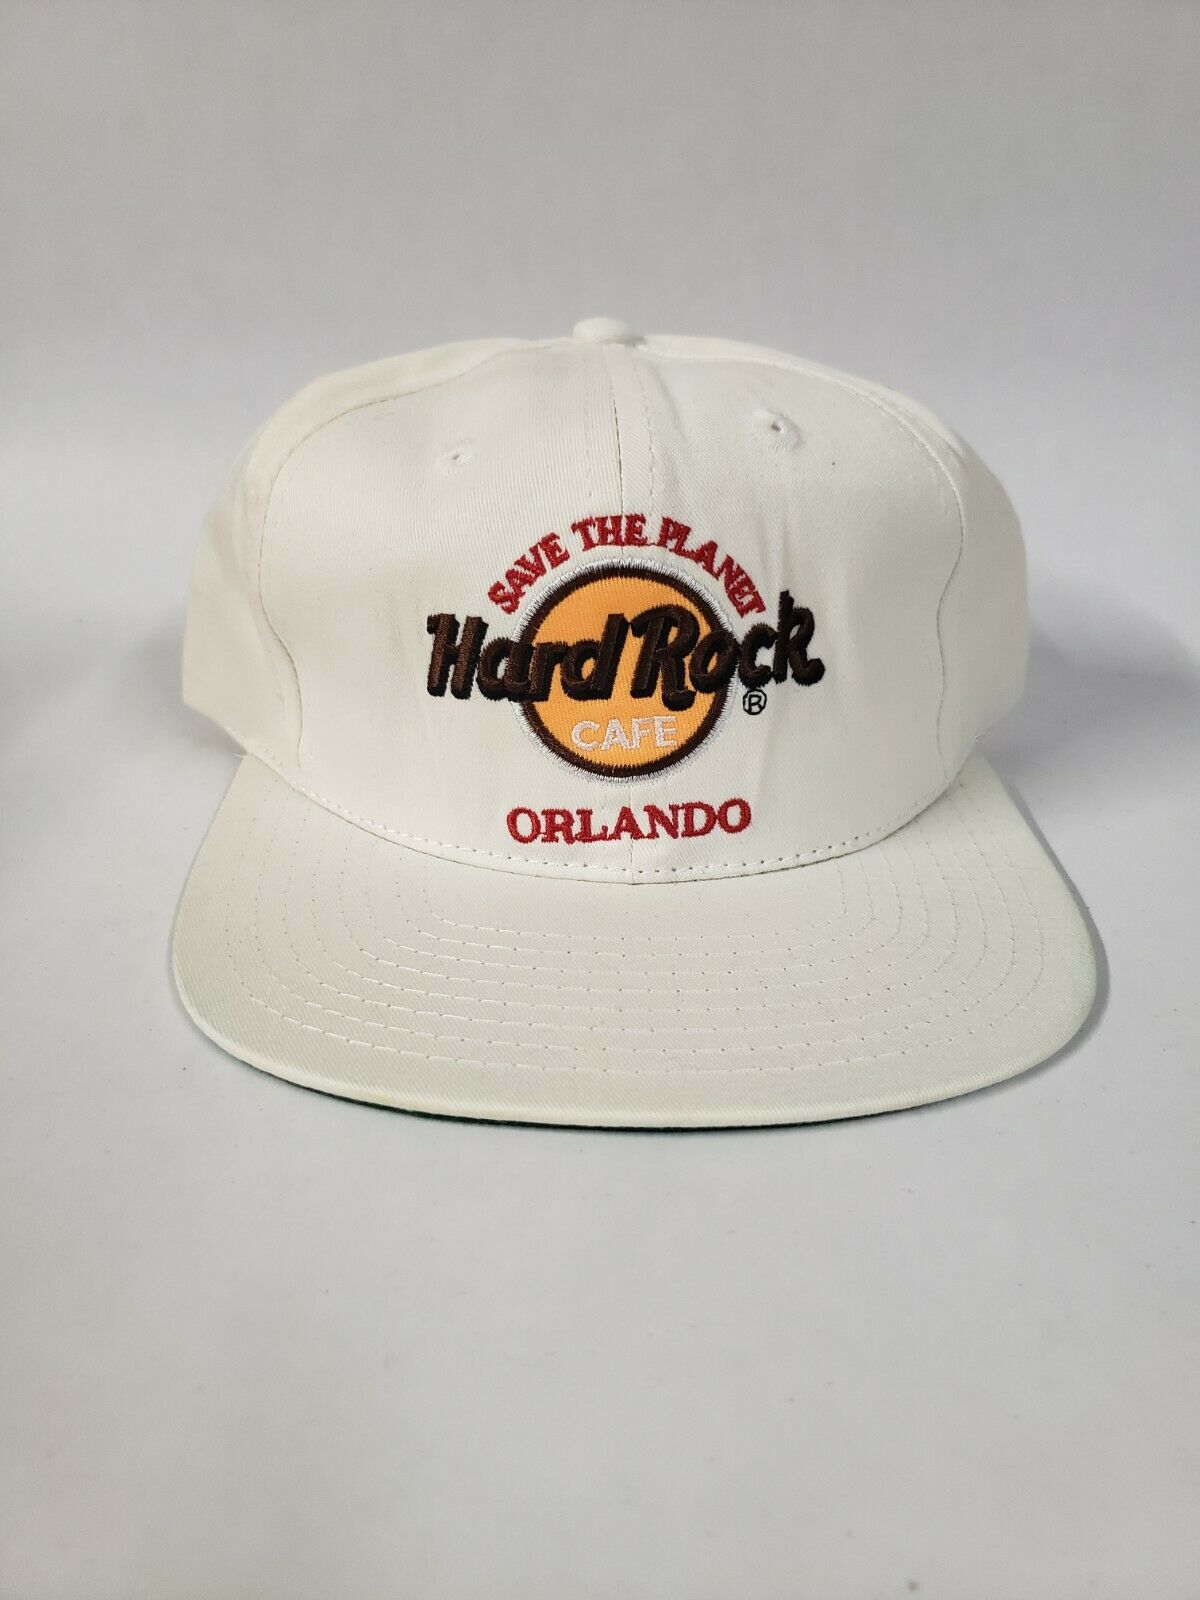 Vintage Hard Rock Cafe Orlando Save the Planet Snap Back Hat